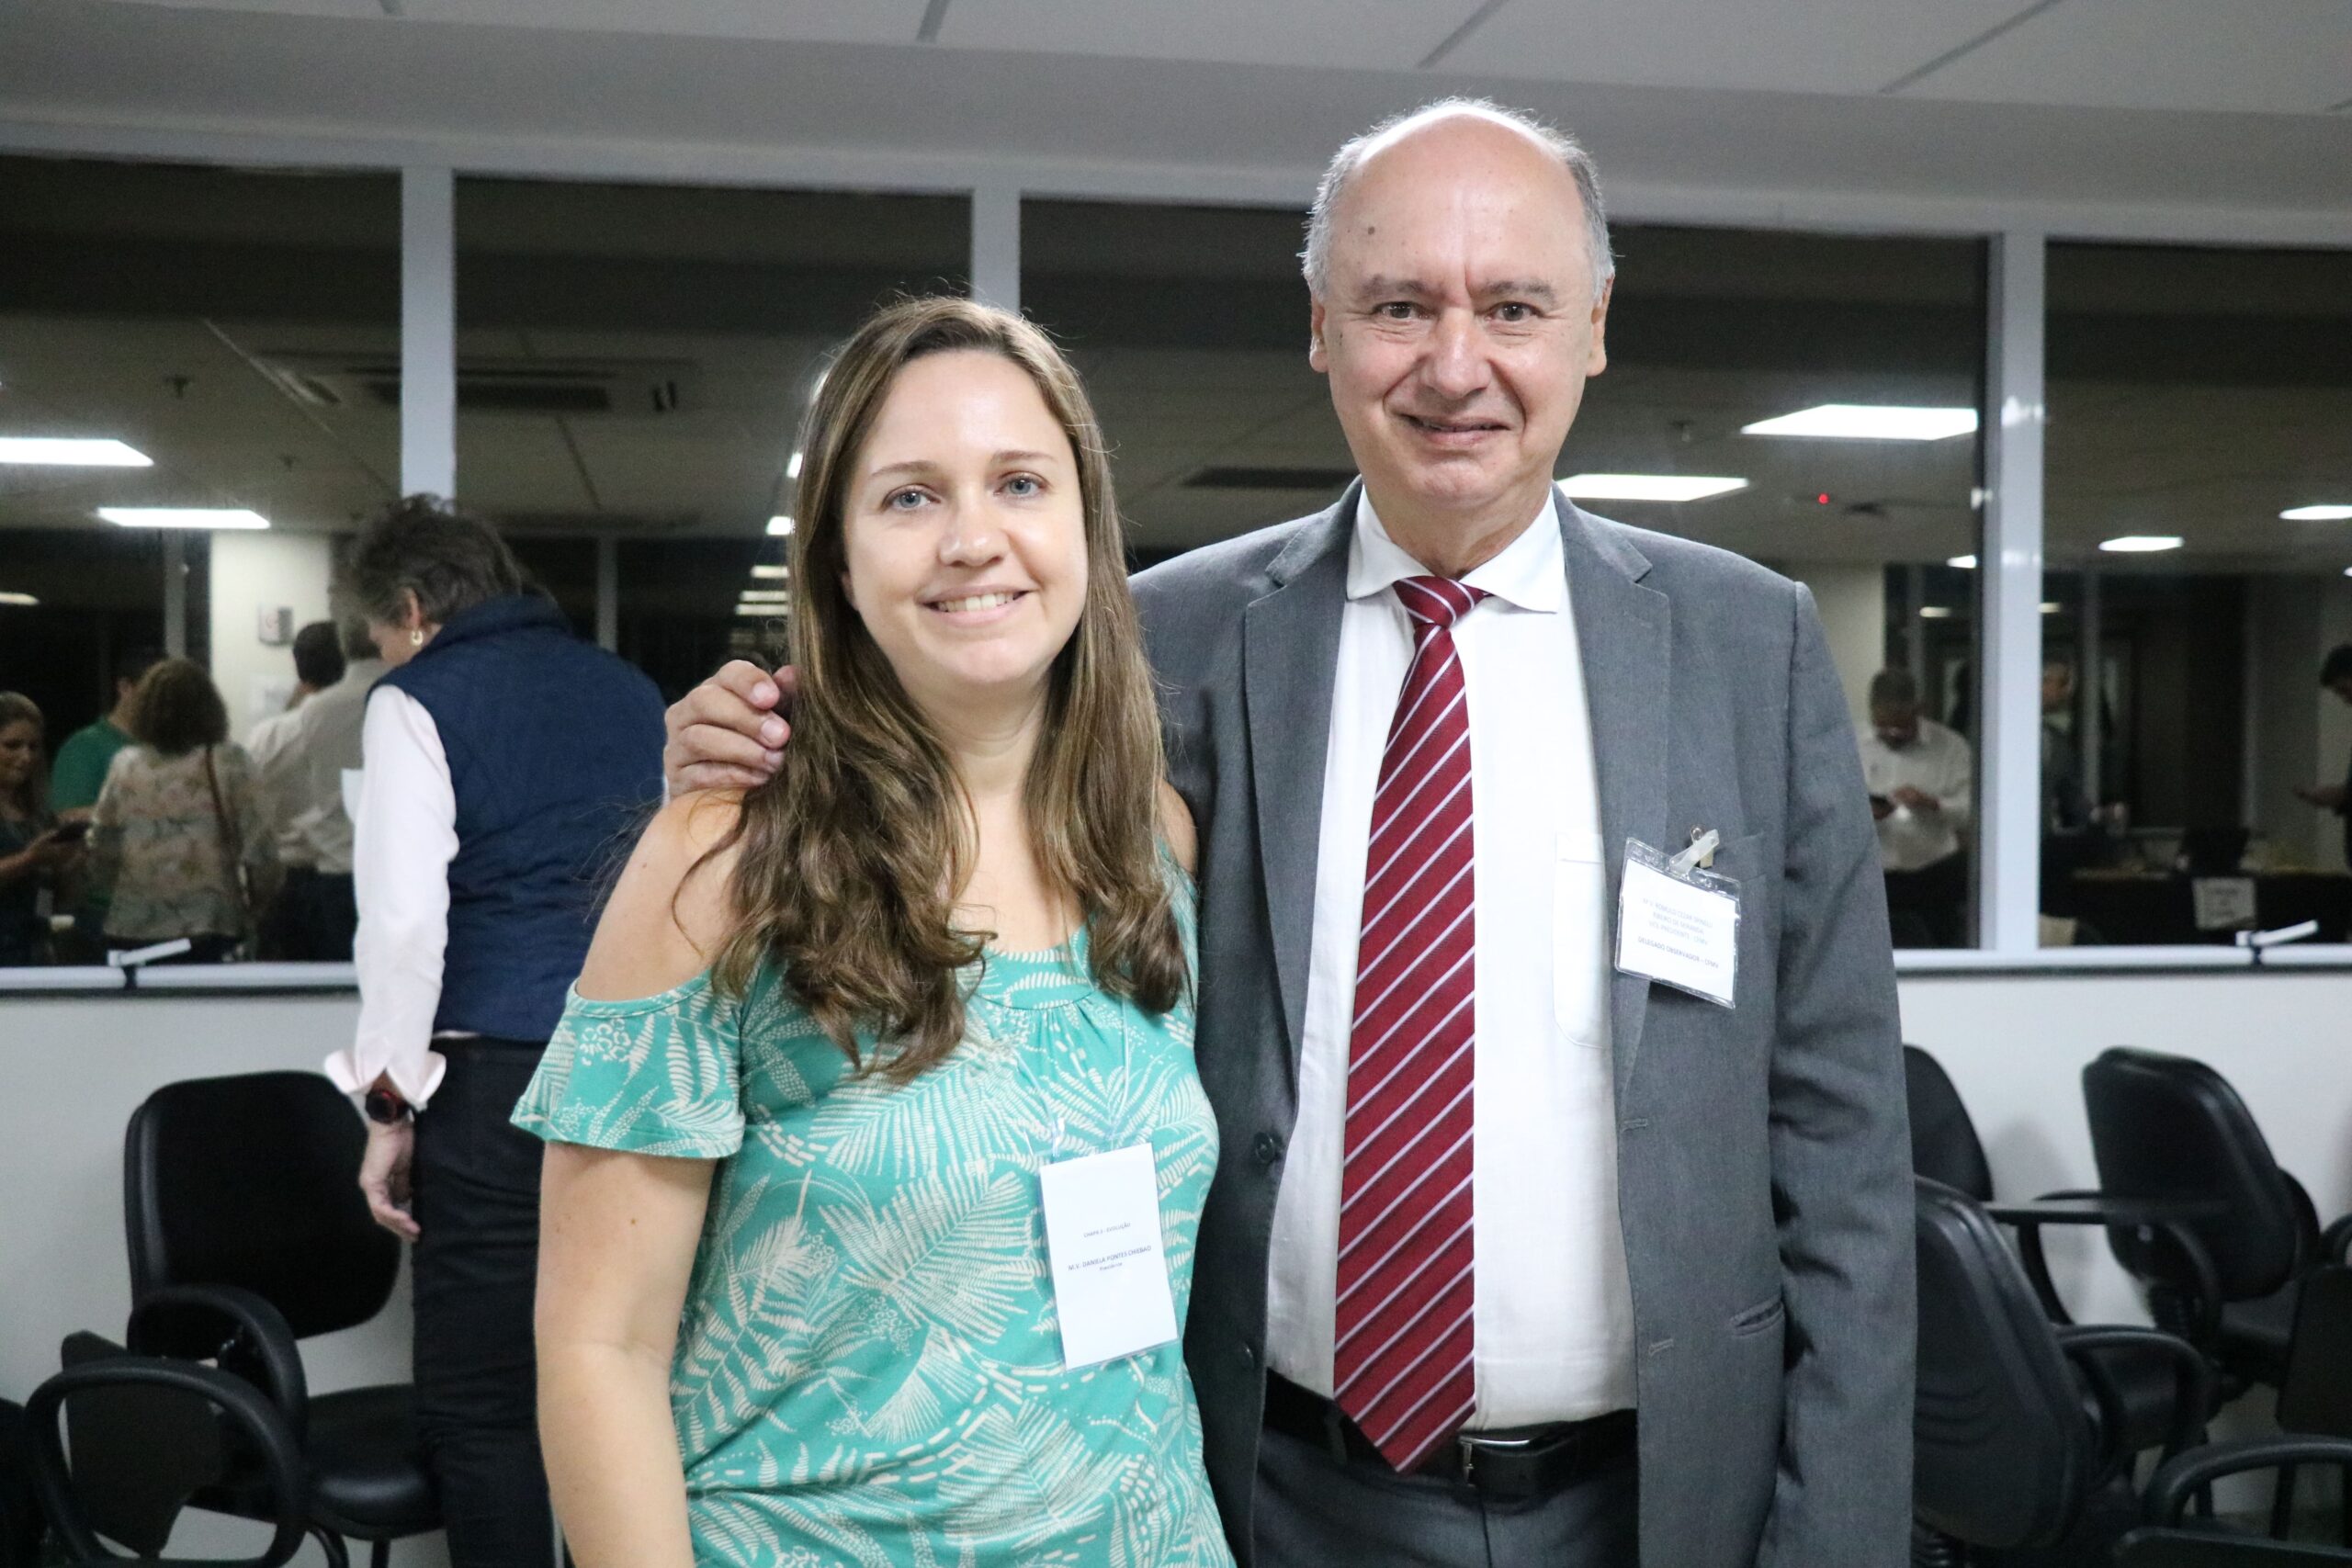 Na foto, o vice-presidente do Conselho Federal de Medicina Veterinária (CFMV), Romulo Cezar Spinelli Ribeiro de Miranda, está ao lado da presidente eleita, Daniela Pontes Chiebao.